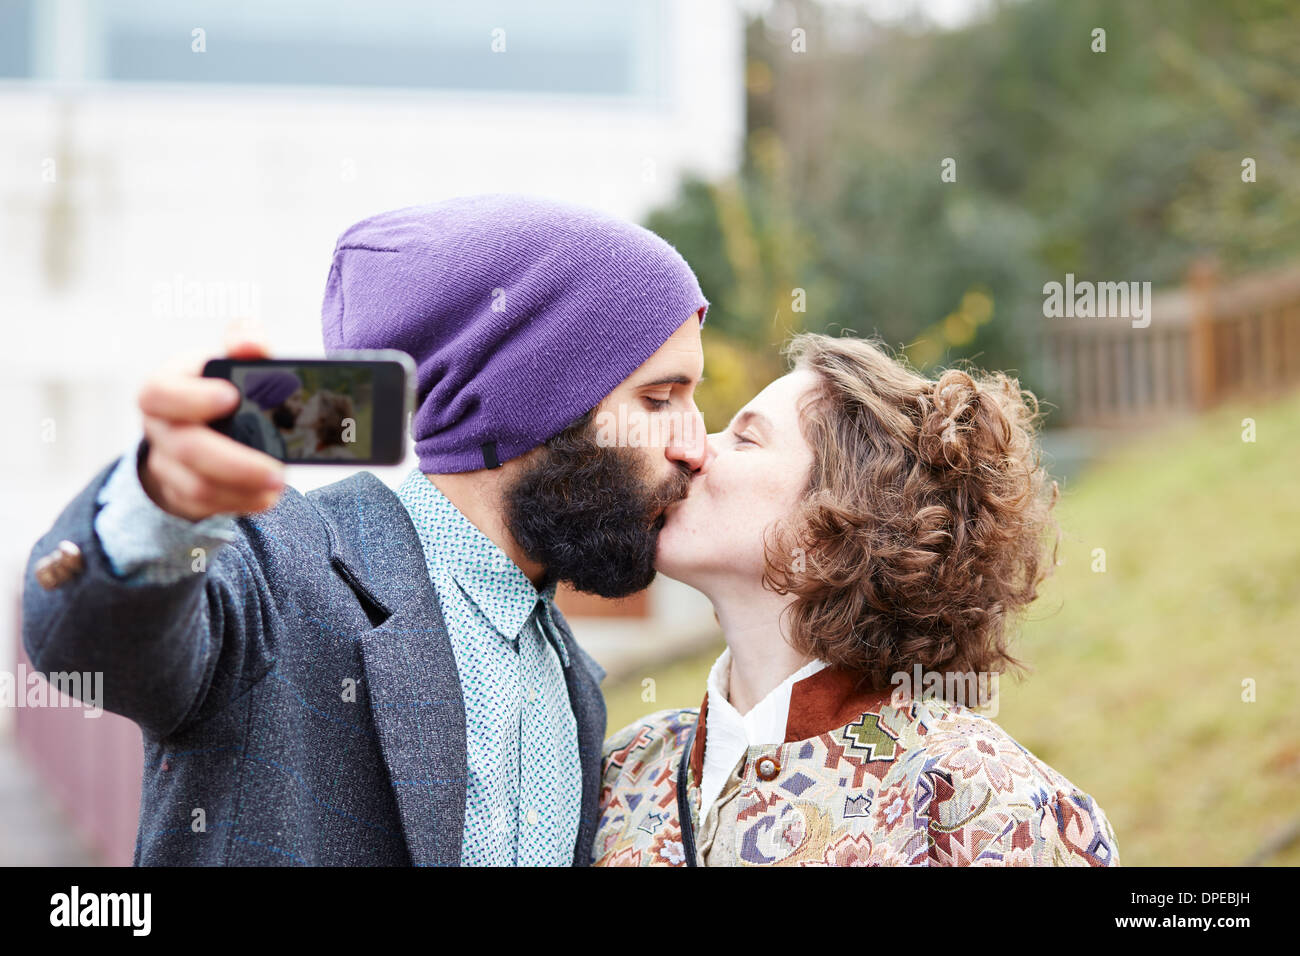 Paio di prendere una fotografia di se stessi baciando con uno smartphone all'aperto Foto Stock